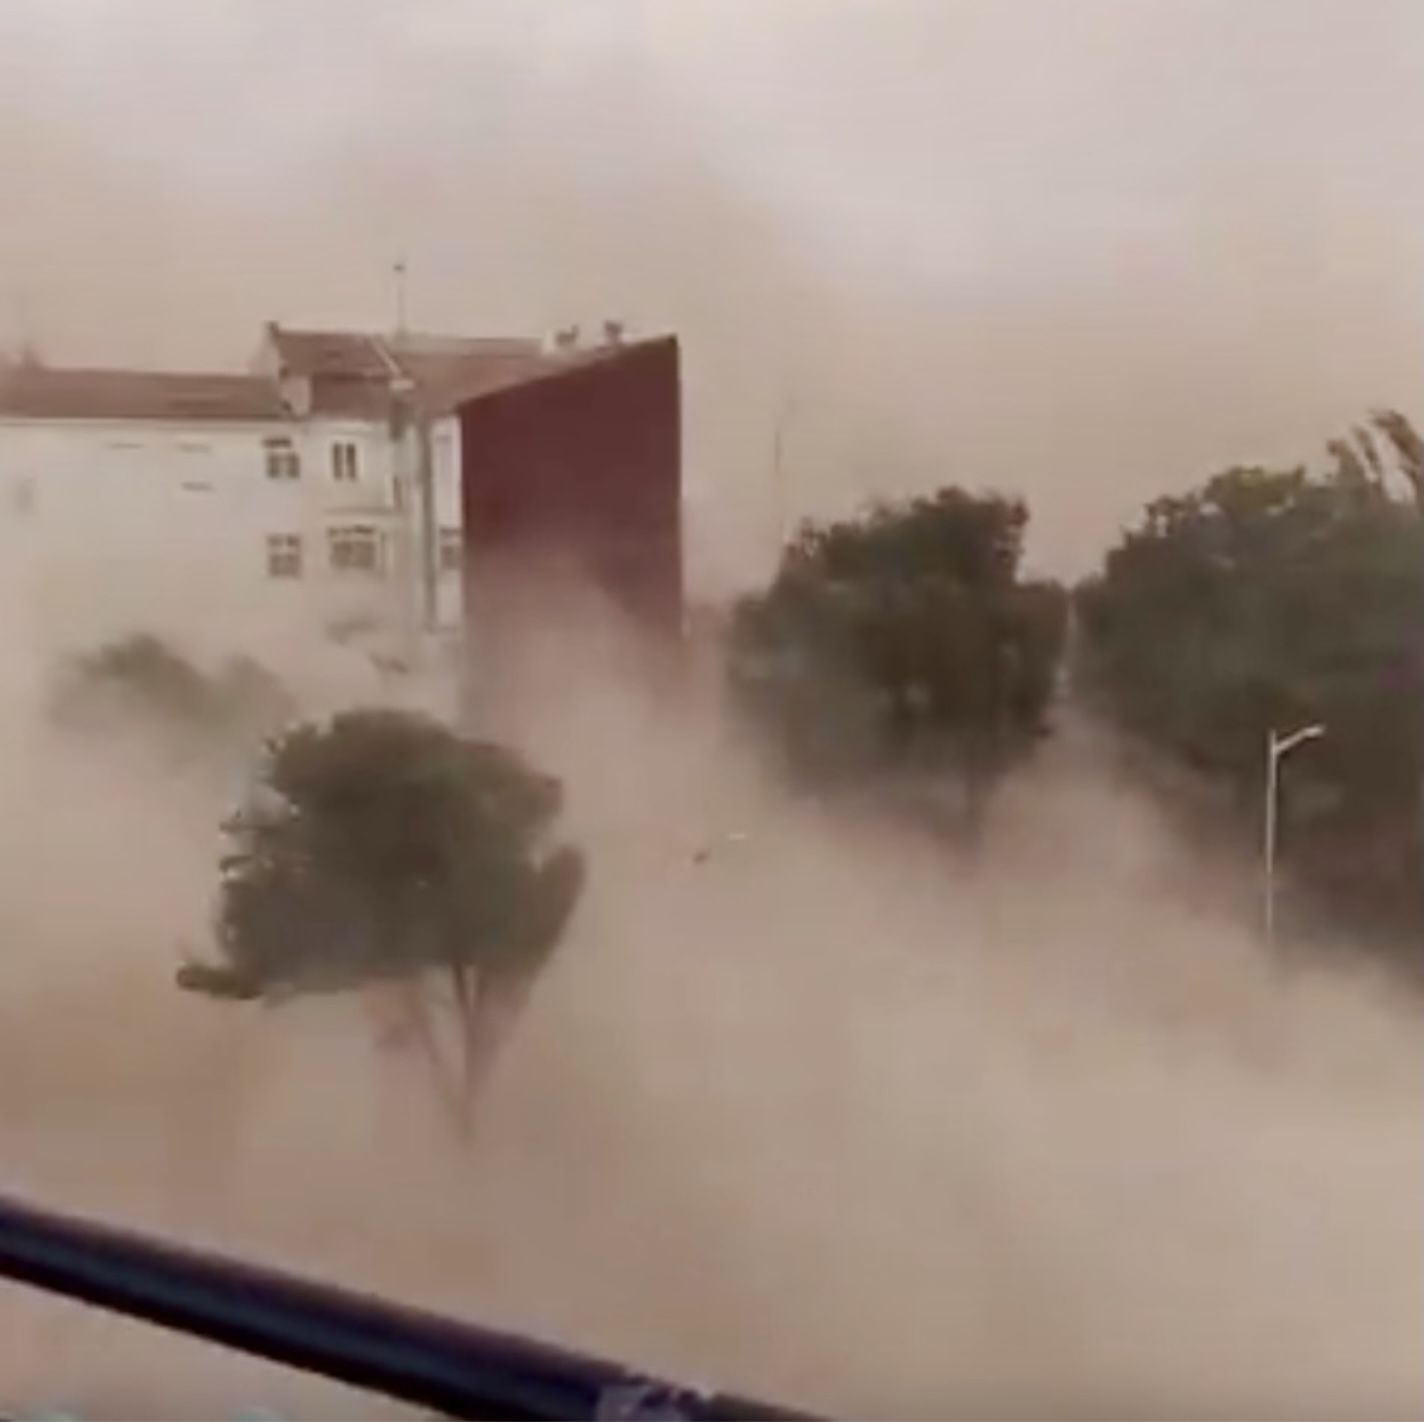 "¡Impresionante!": La ola de calor provoca una tormenta de arena en Albacete y se hace viral. Foto: captura vídeo de Twitter